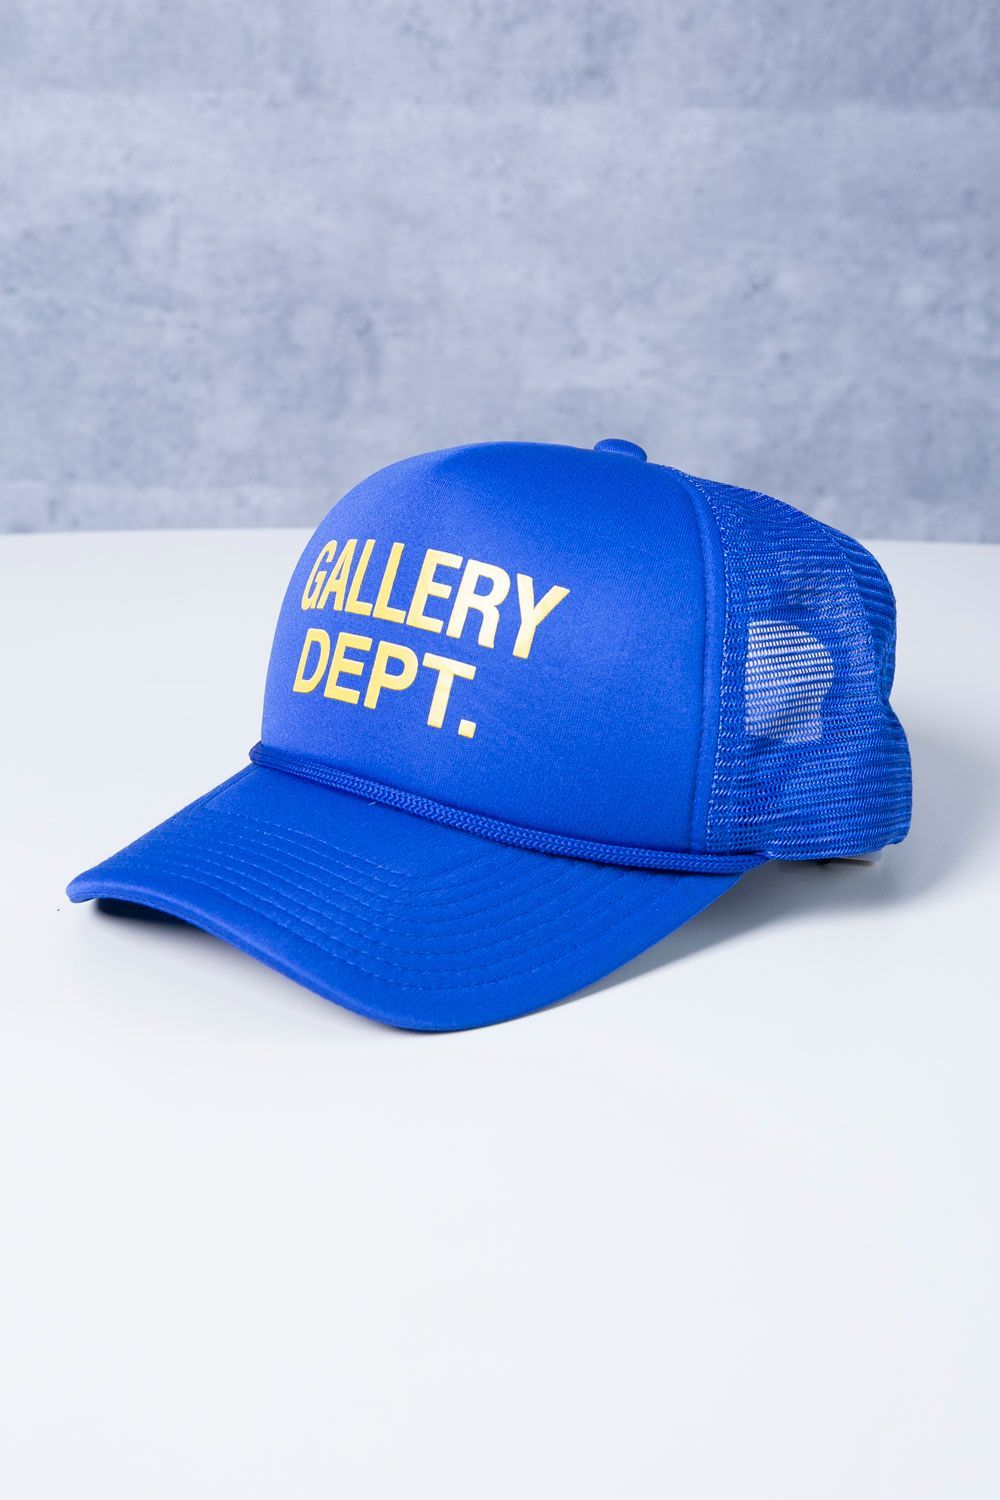 GALLERY DEPT. TRUCKER CAPトラッカー メッシュ キャップ - メルカリ